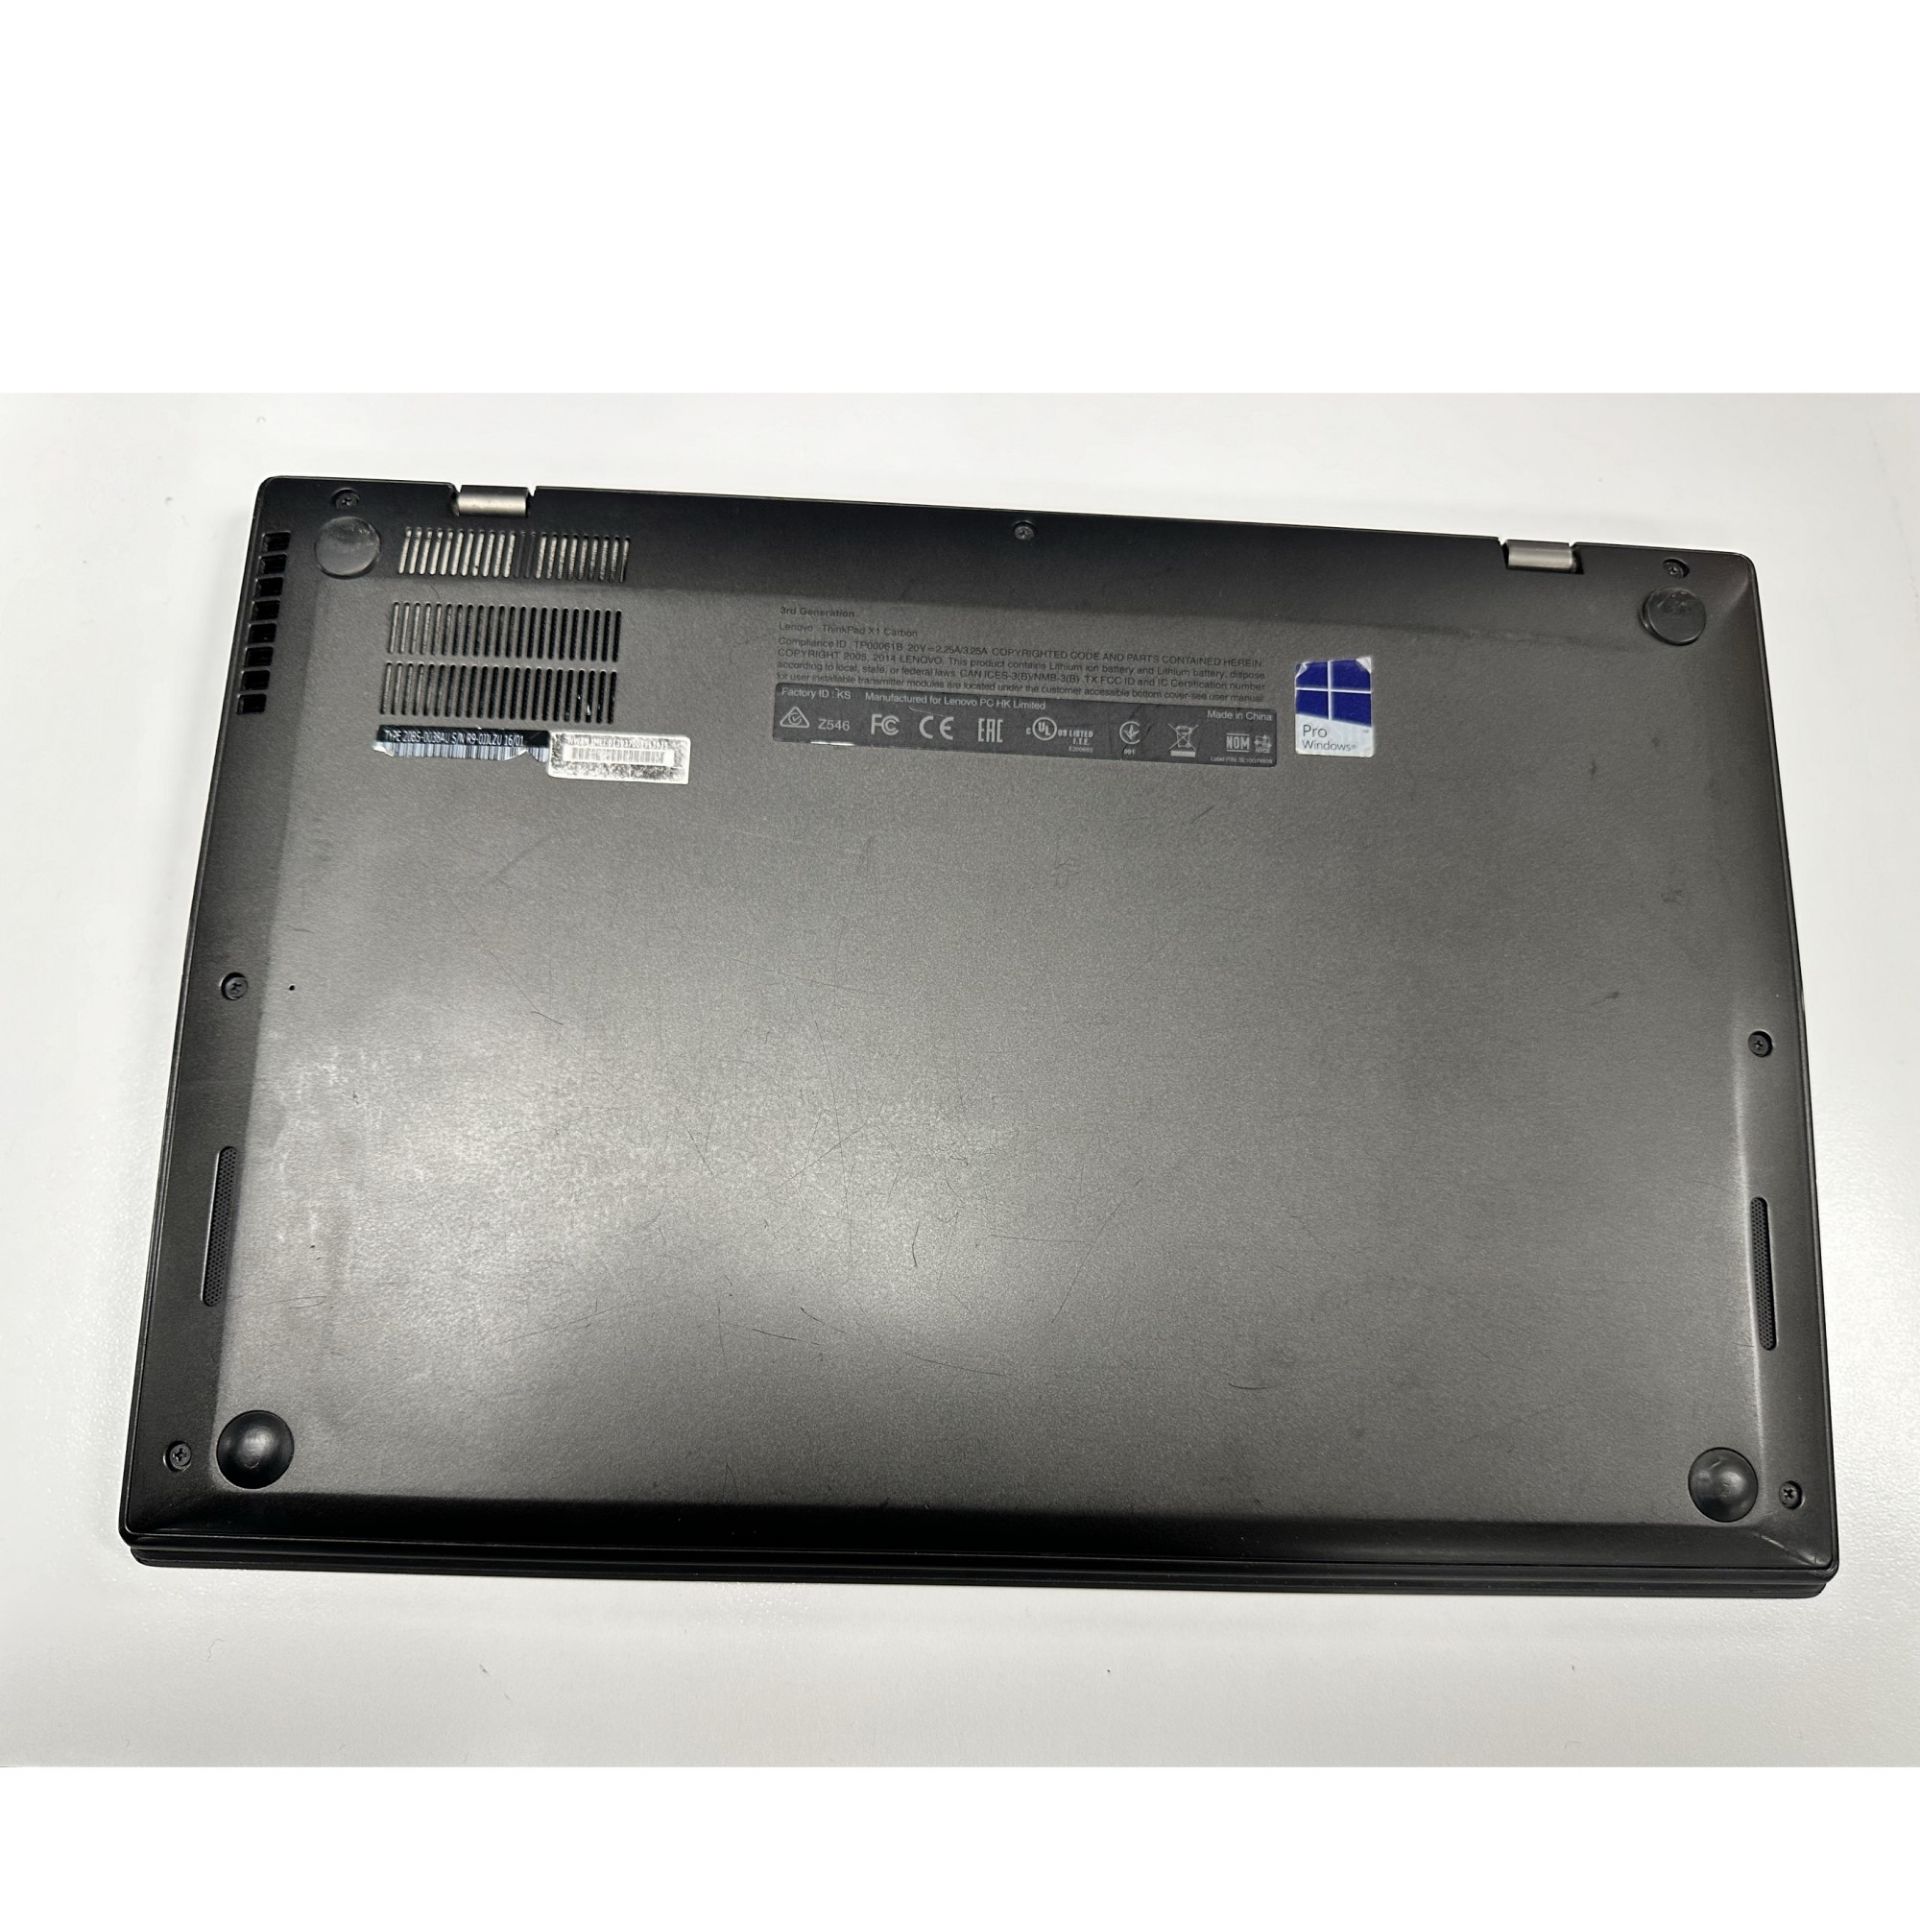 Picture of Thinkpad X1 Carbon 14" i7 5600U 8GB 256HDD W10 - Ex staff PC